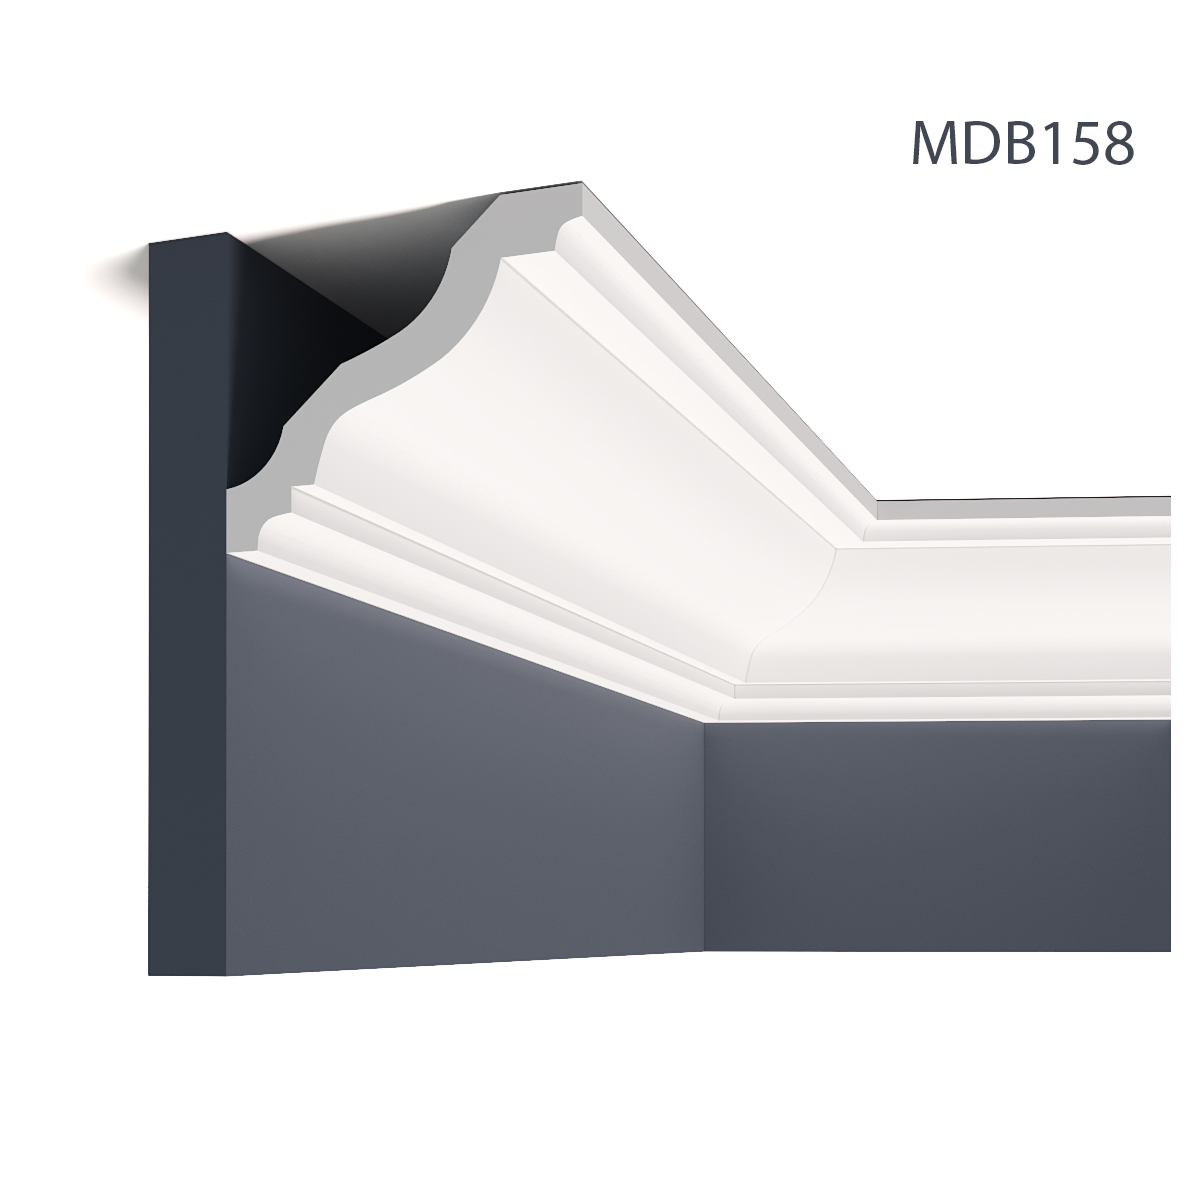 Profile Decorative Mardom Decor MRD-MDB158. Conține culorile: